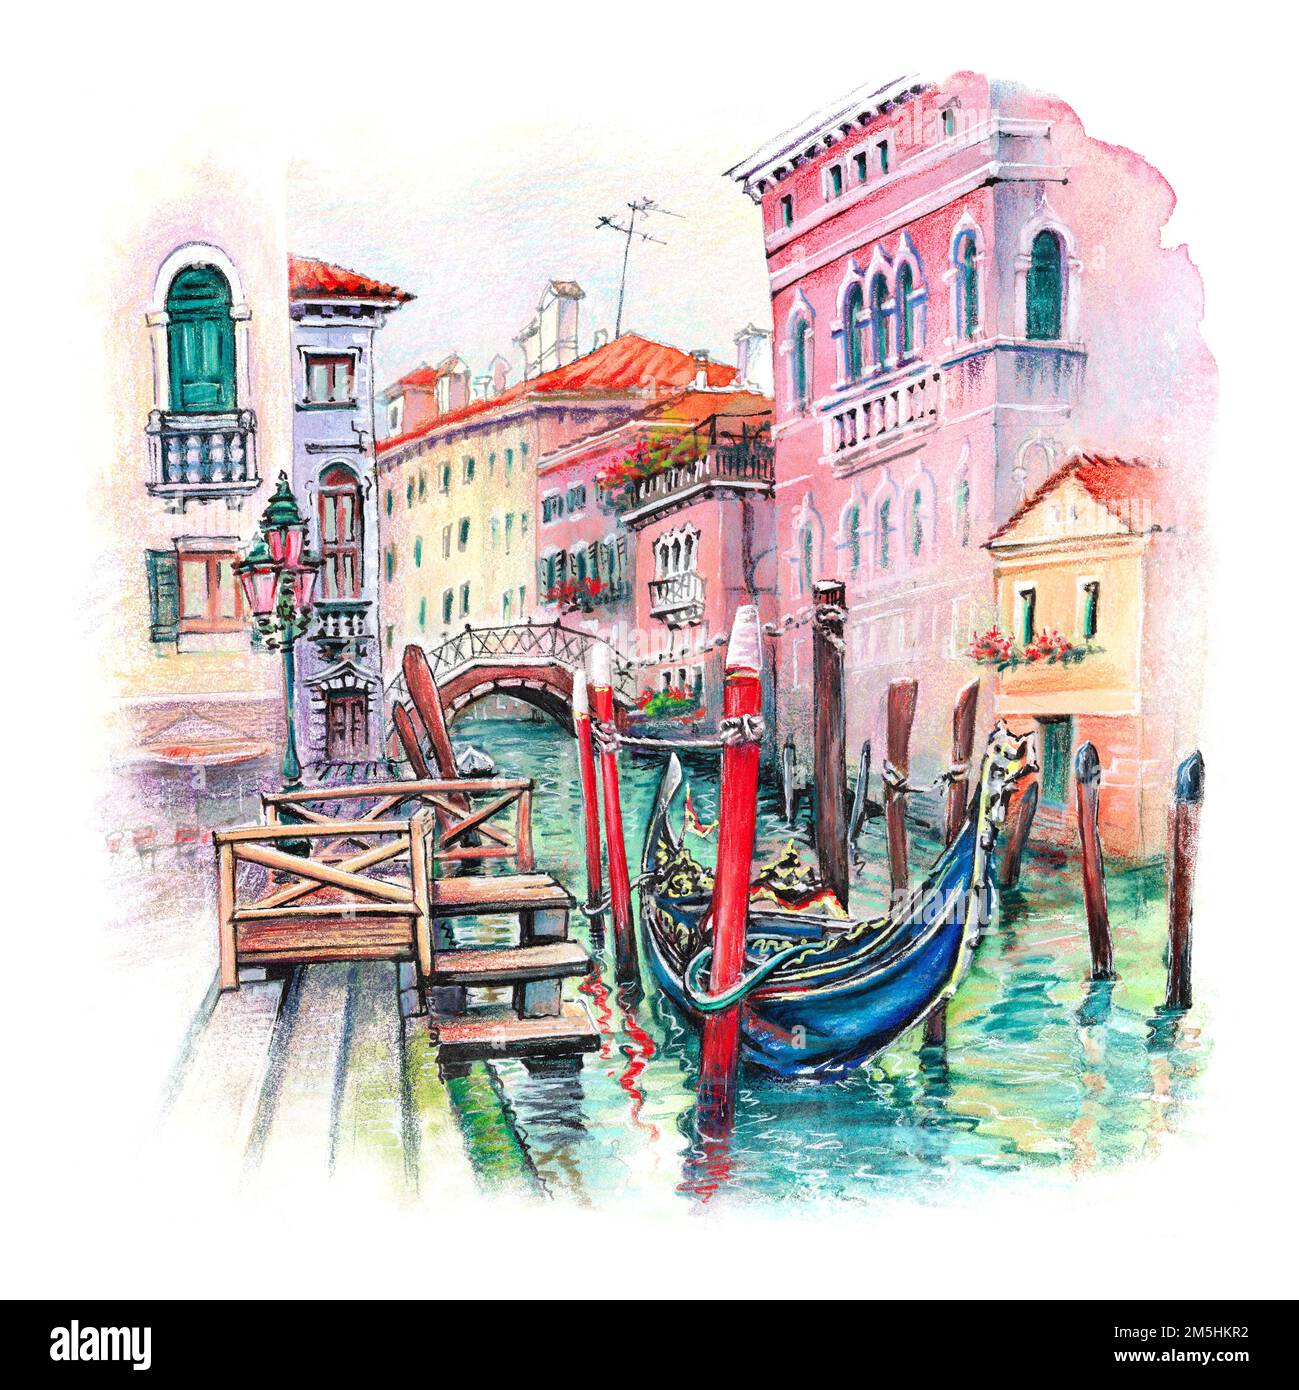 Aquarelle du canal Santi Giovanni e Paolo et des gondoles à leurs amarres, Venise, Italie Banque D'Images